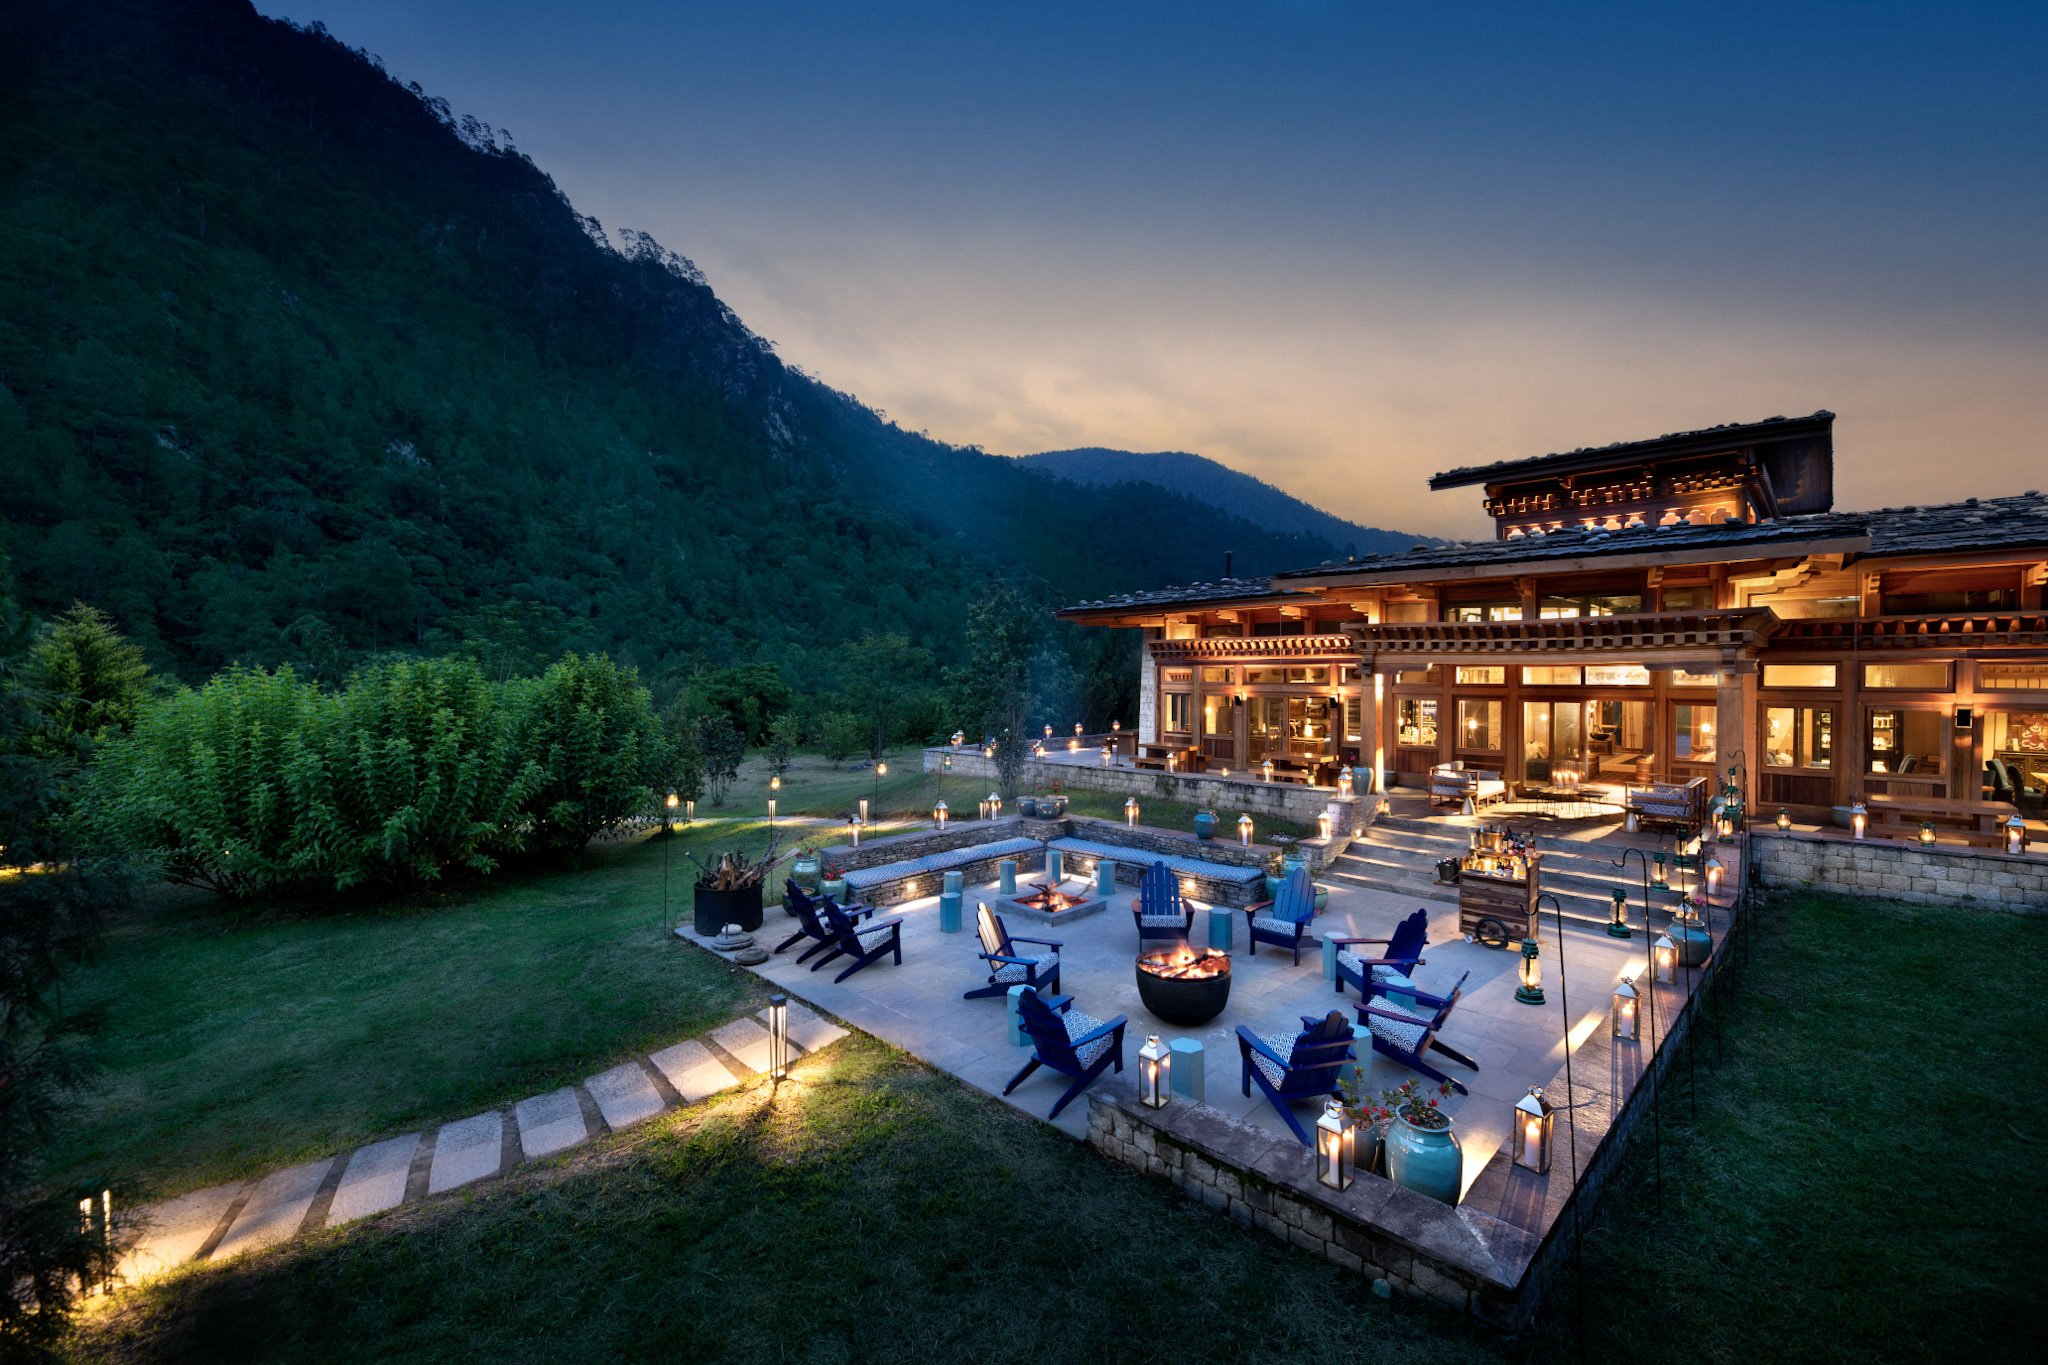 20-Bhutan-Punakha-River-Lodge-Guest-Area-Fire-Pit_2.jpg